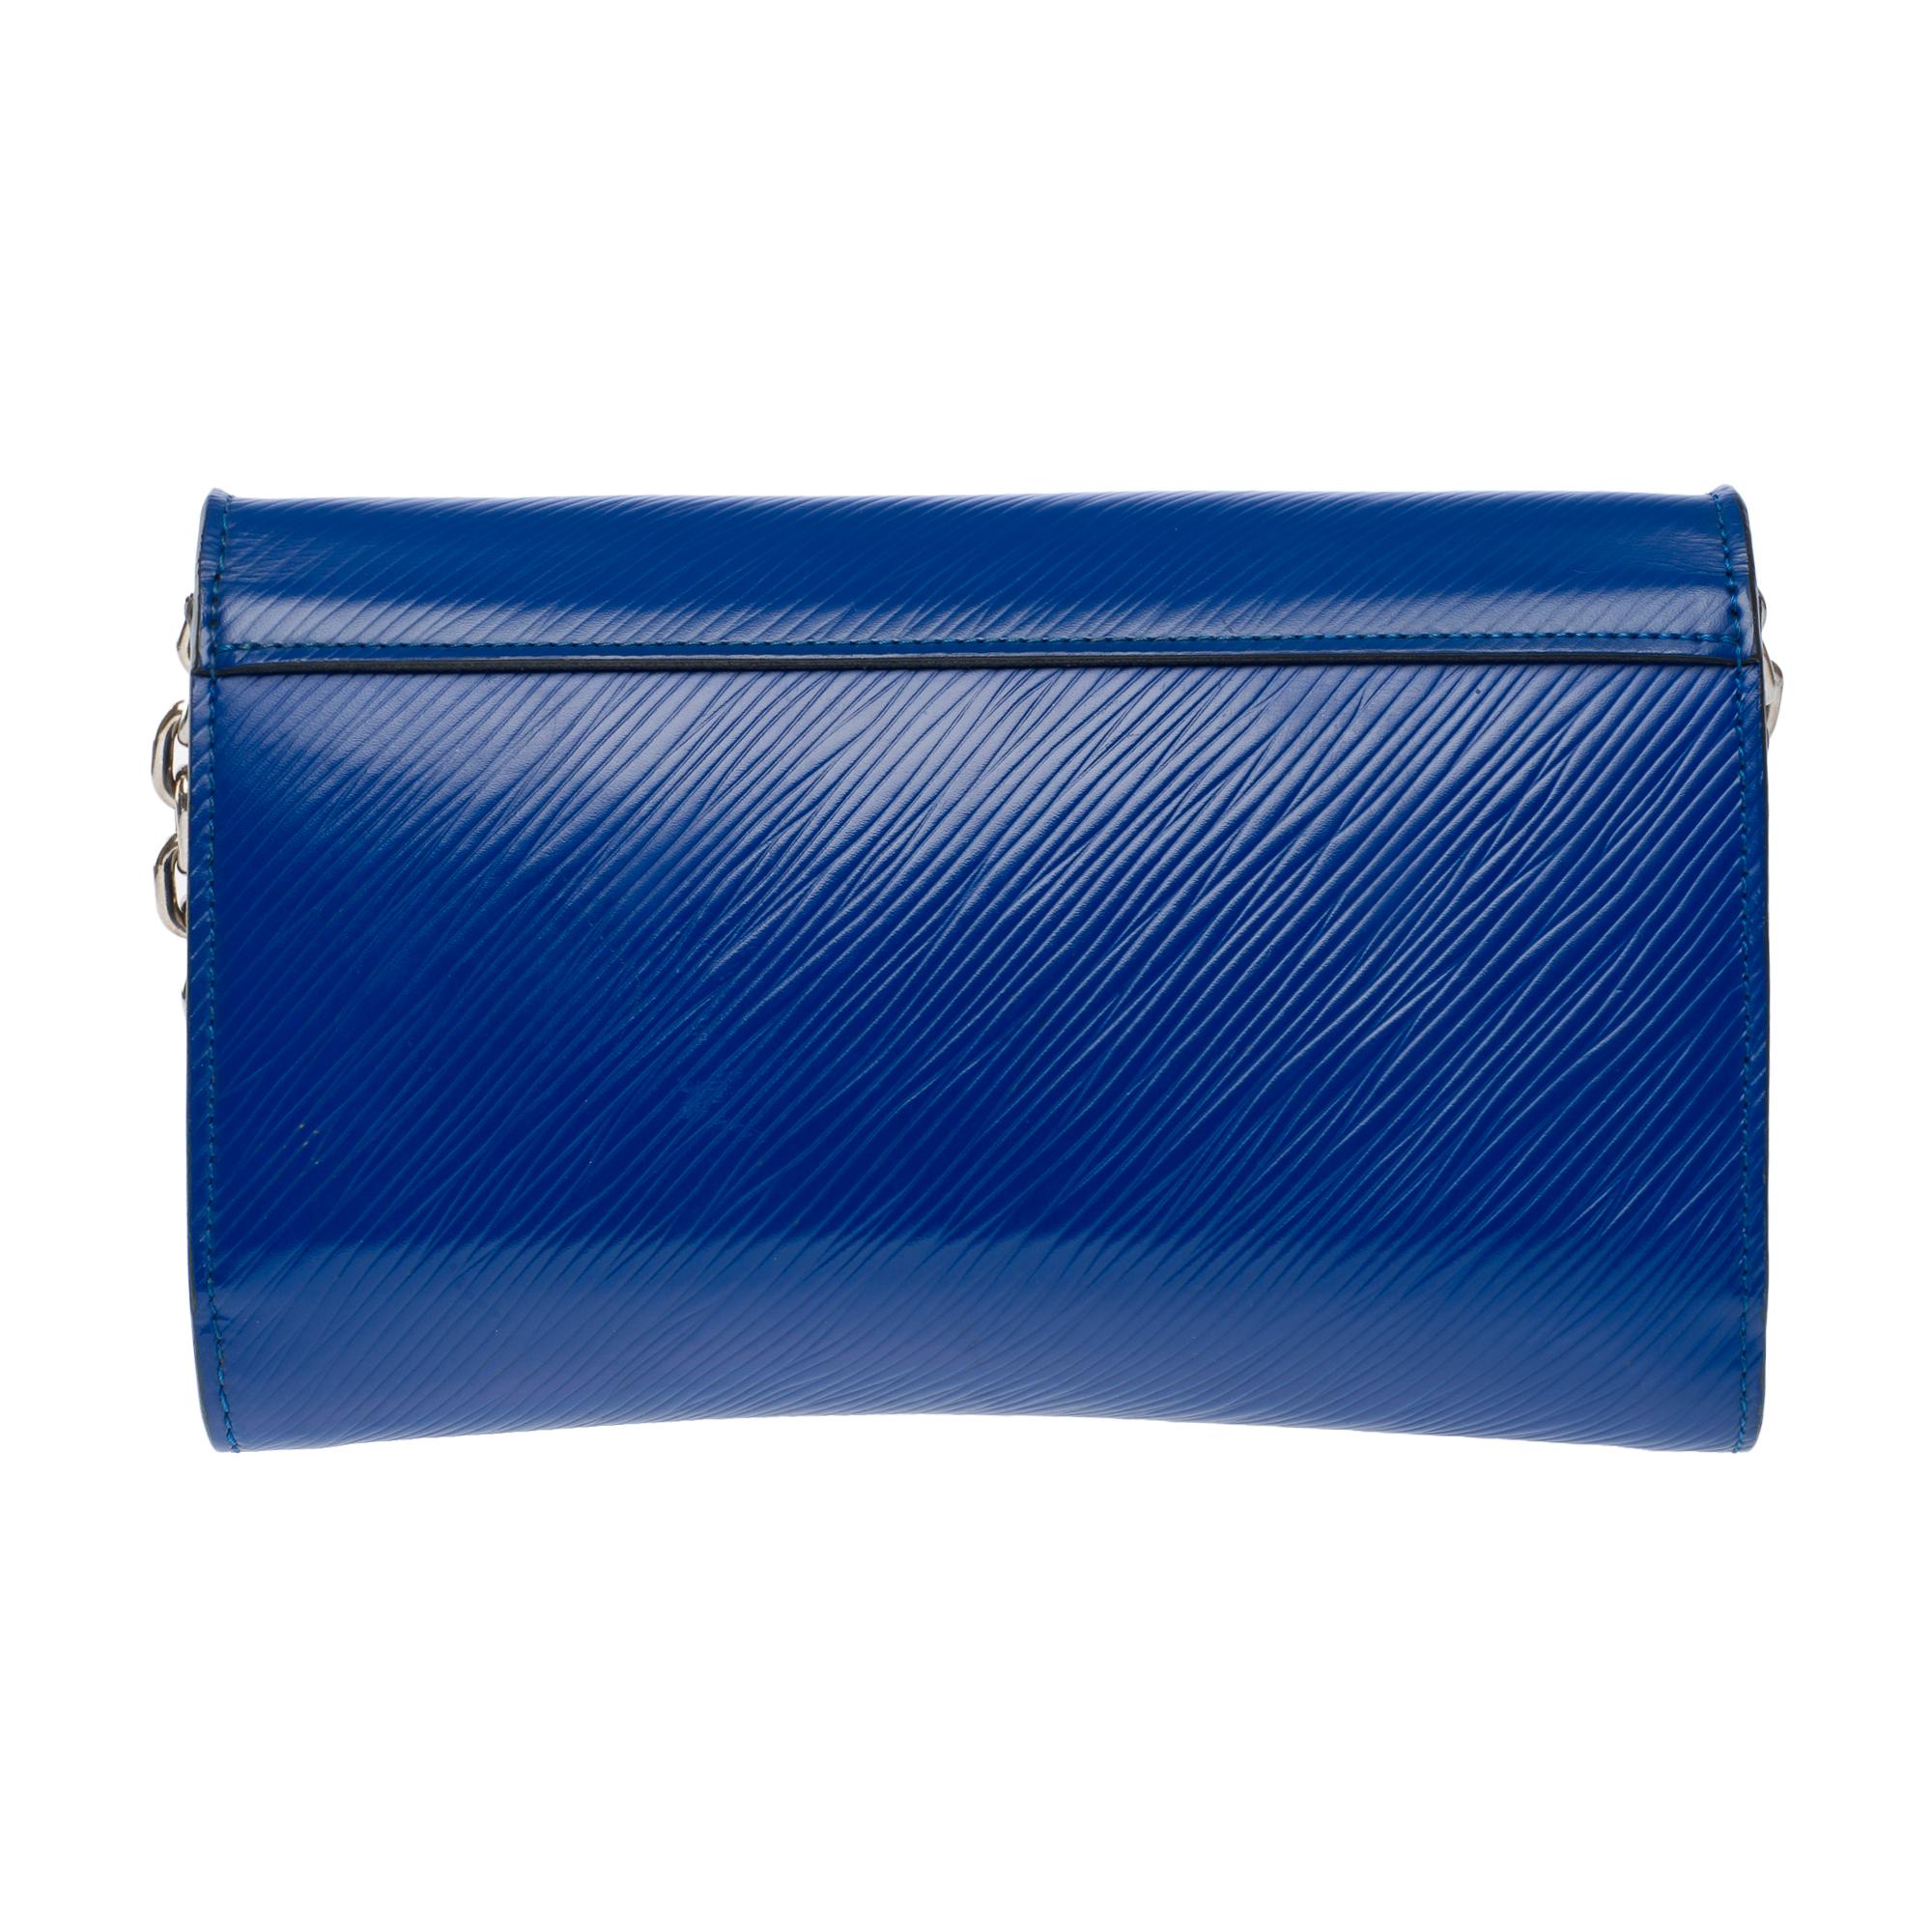 Women's Flamingo Louis Vuitton Twist shoulder bag in blue epi leather, SHW